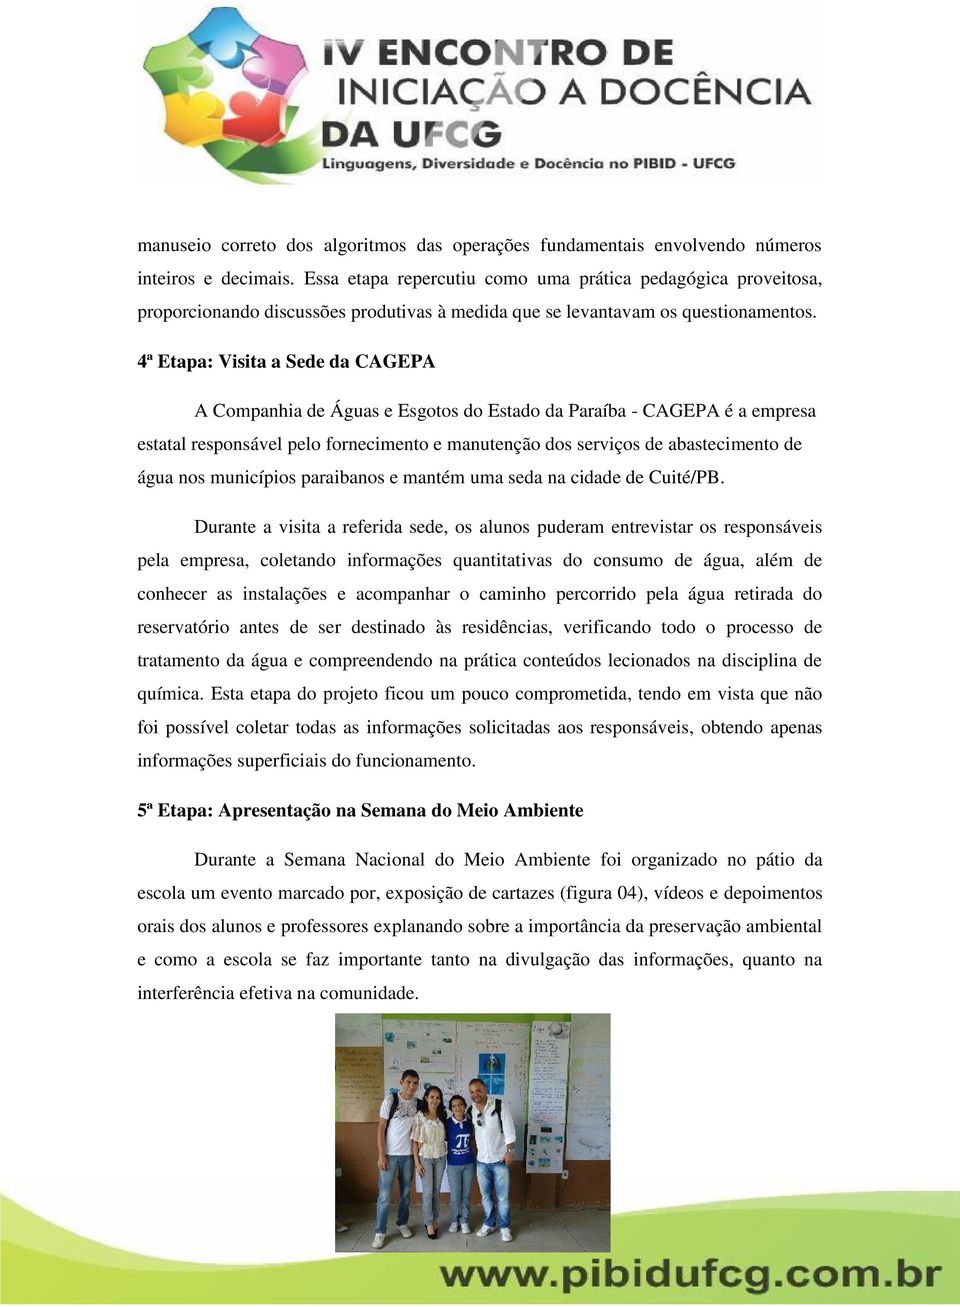 4ª Etapa: Visita a Sede da CAGEPA A Companhia de Águas e Esgotos do Estado da Paraíba - CAGEPA é a empresa estatal responsável pelo fornecimento e manutenção dos serviços de abastecimento de água nos